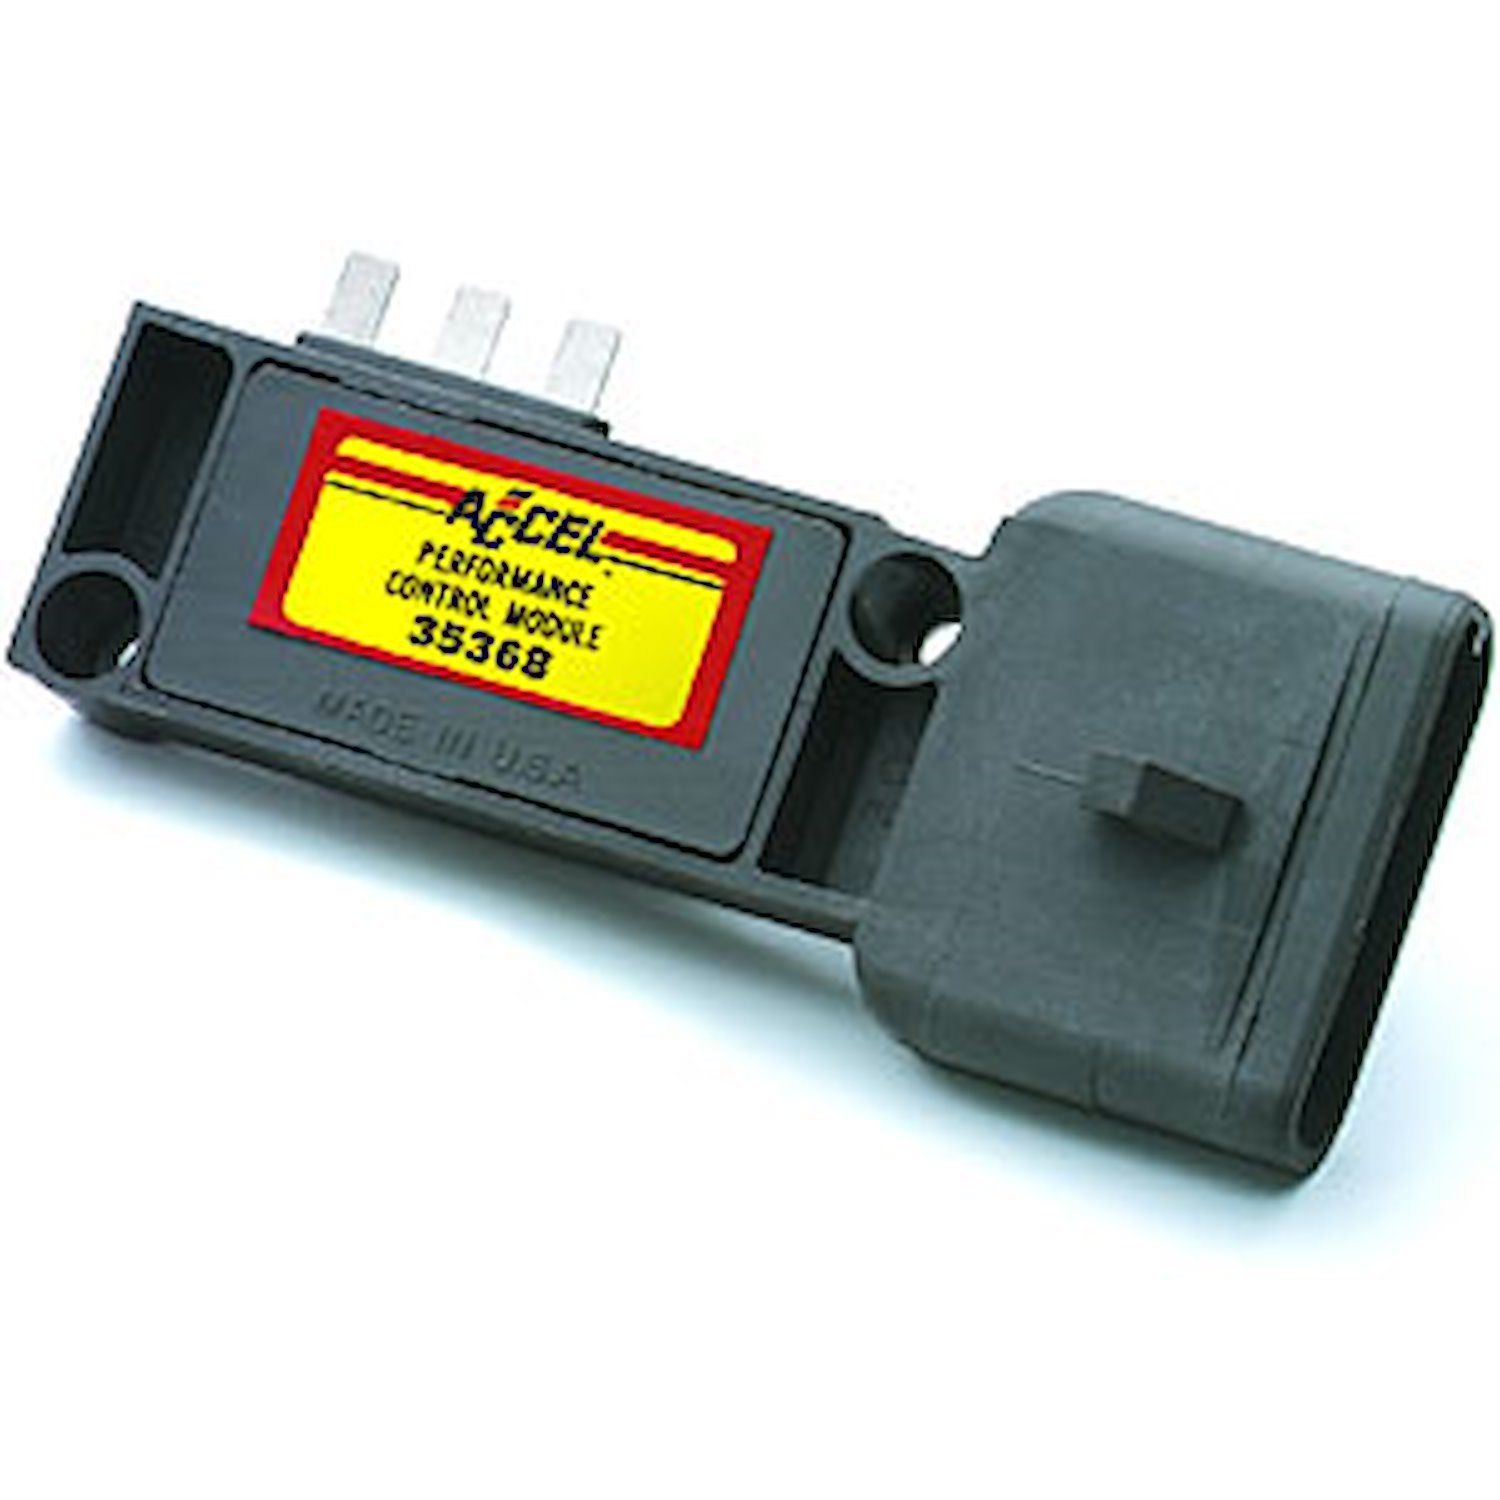 Distributor Control Module Ford 3-Pin (TFI)